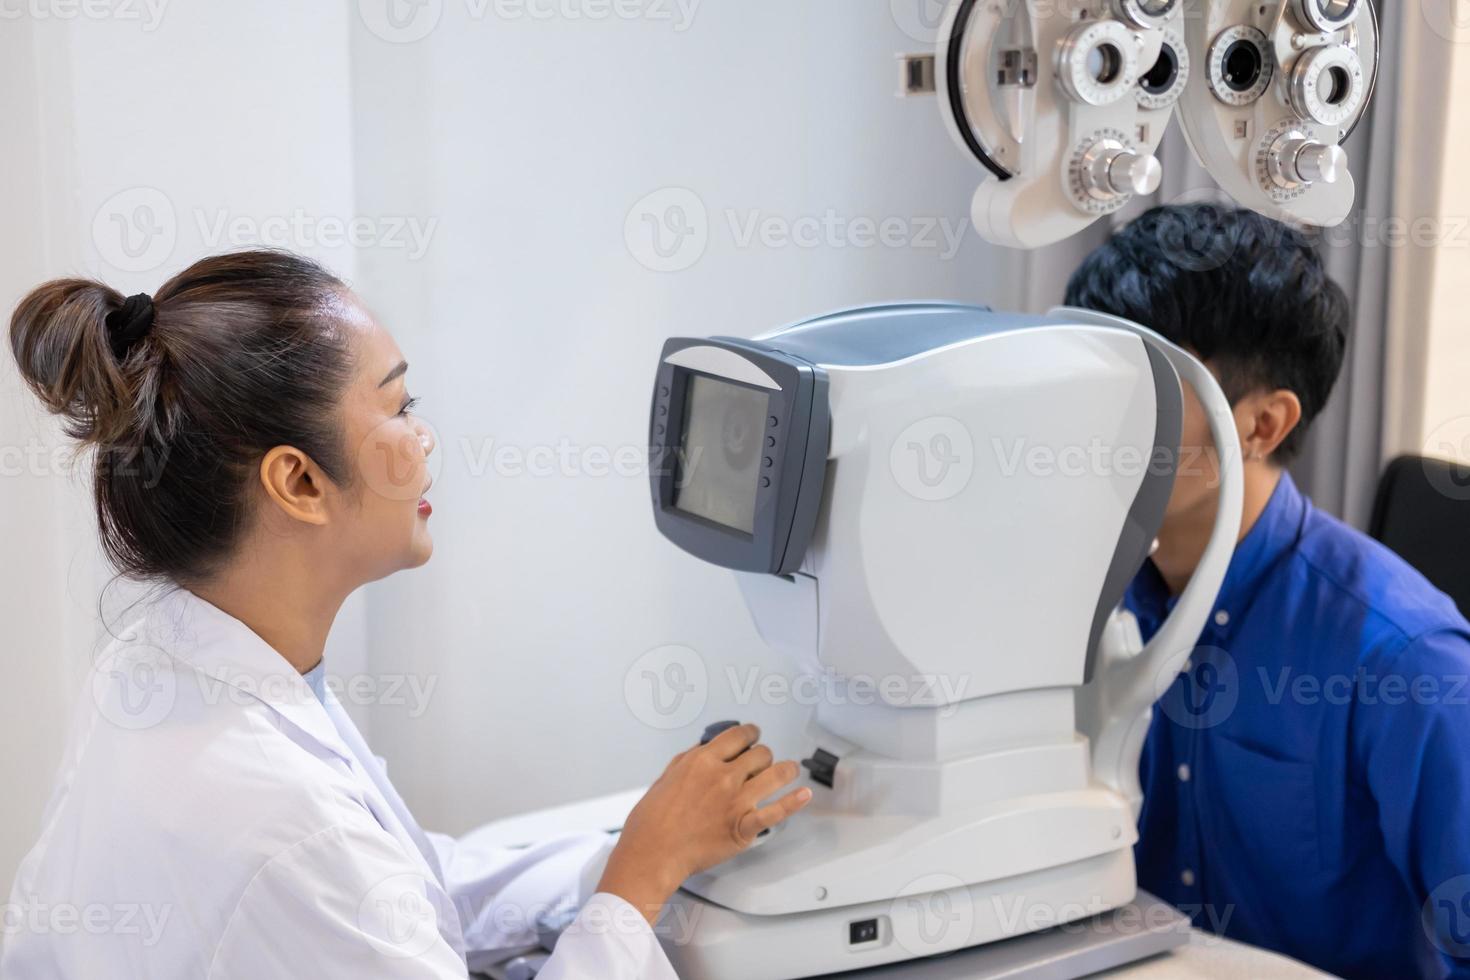 selektiv fokus på skärm av optometri Utrustning. medan optiker använder sig av subjektiv refraktion till undersöka öga visuell systemet av äldre patient kvinnor med professionell maskin innan tillverkad glasögon. foto